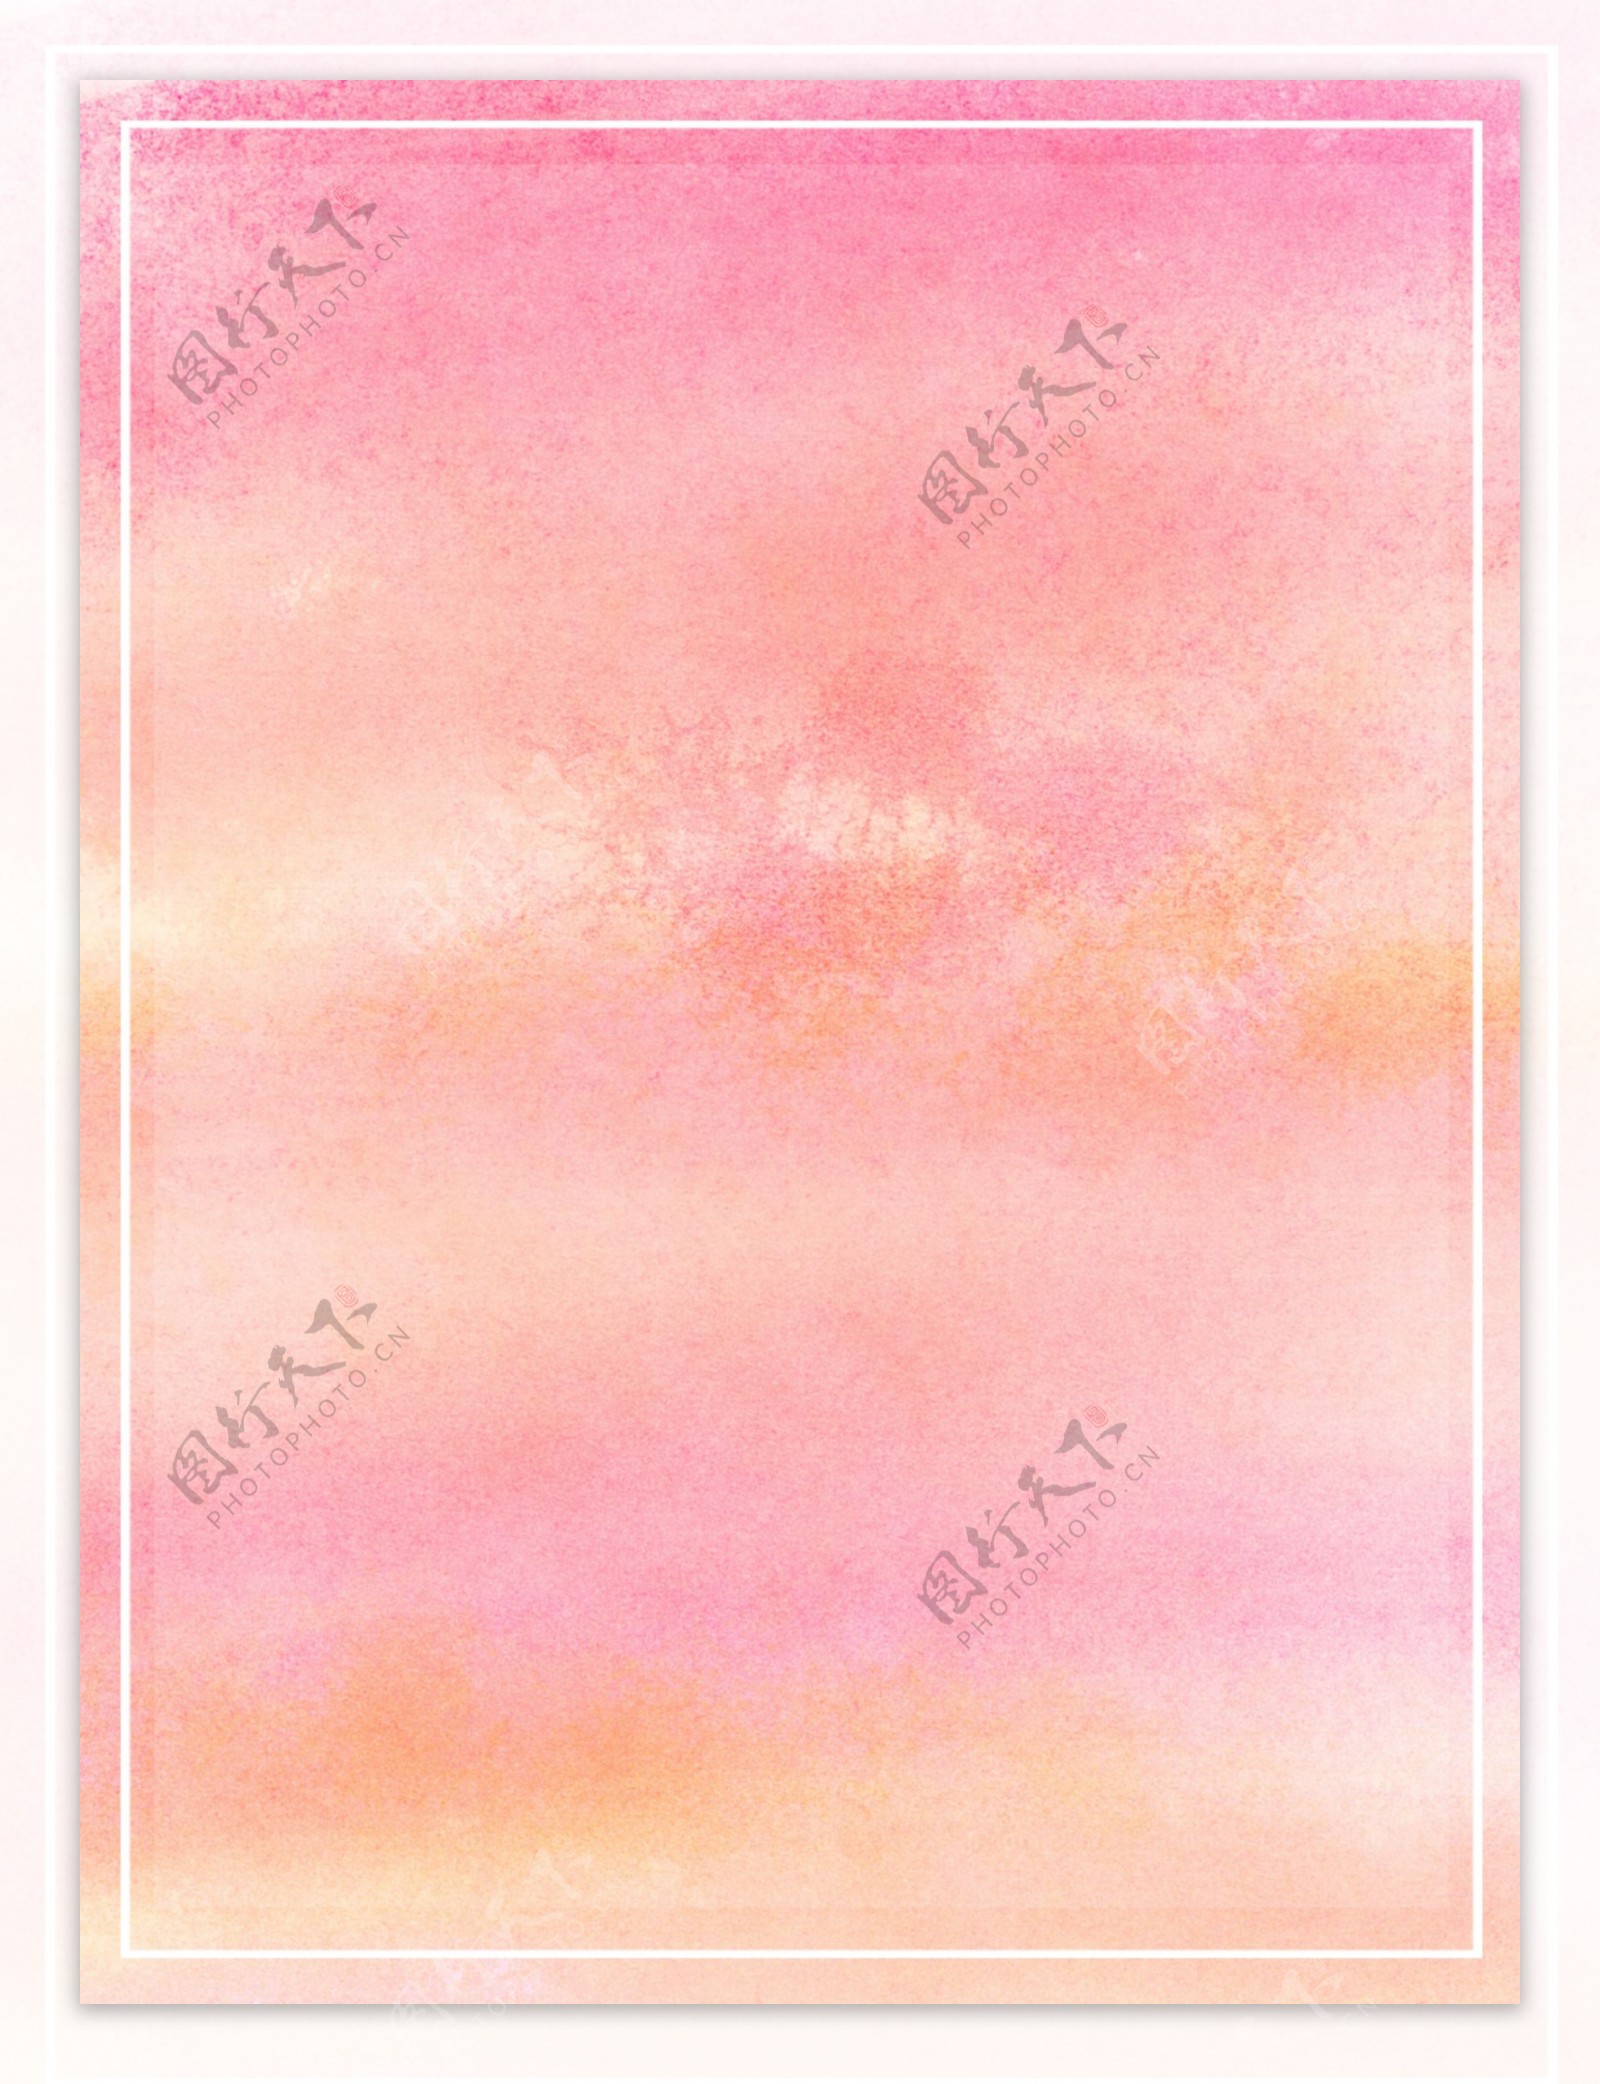 原创晕染粉红系水彩手绘优雅浪漫背景素材